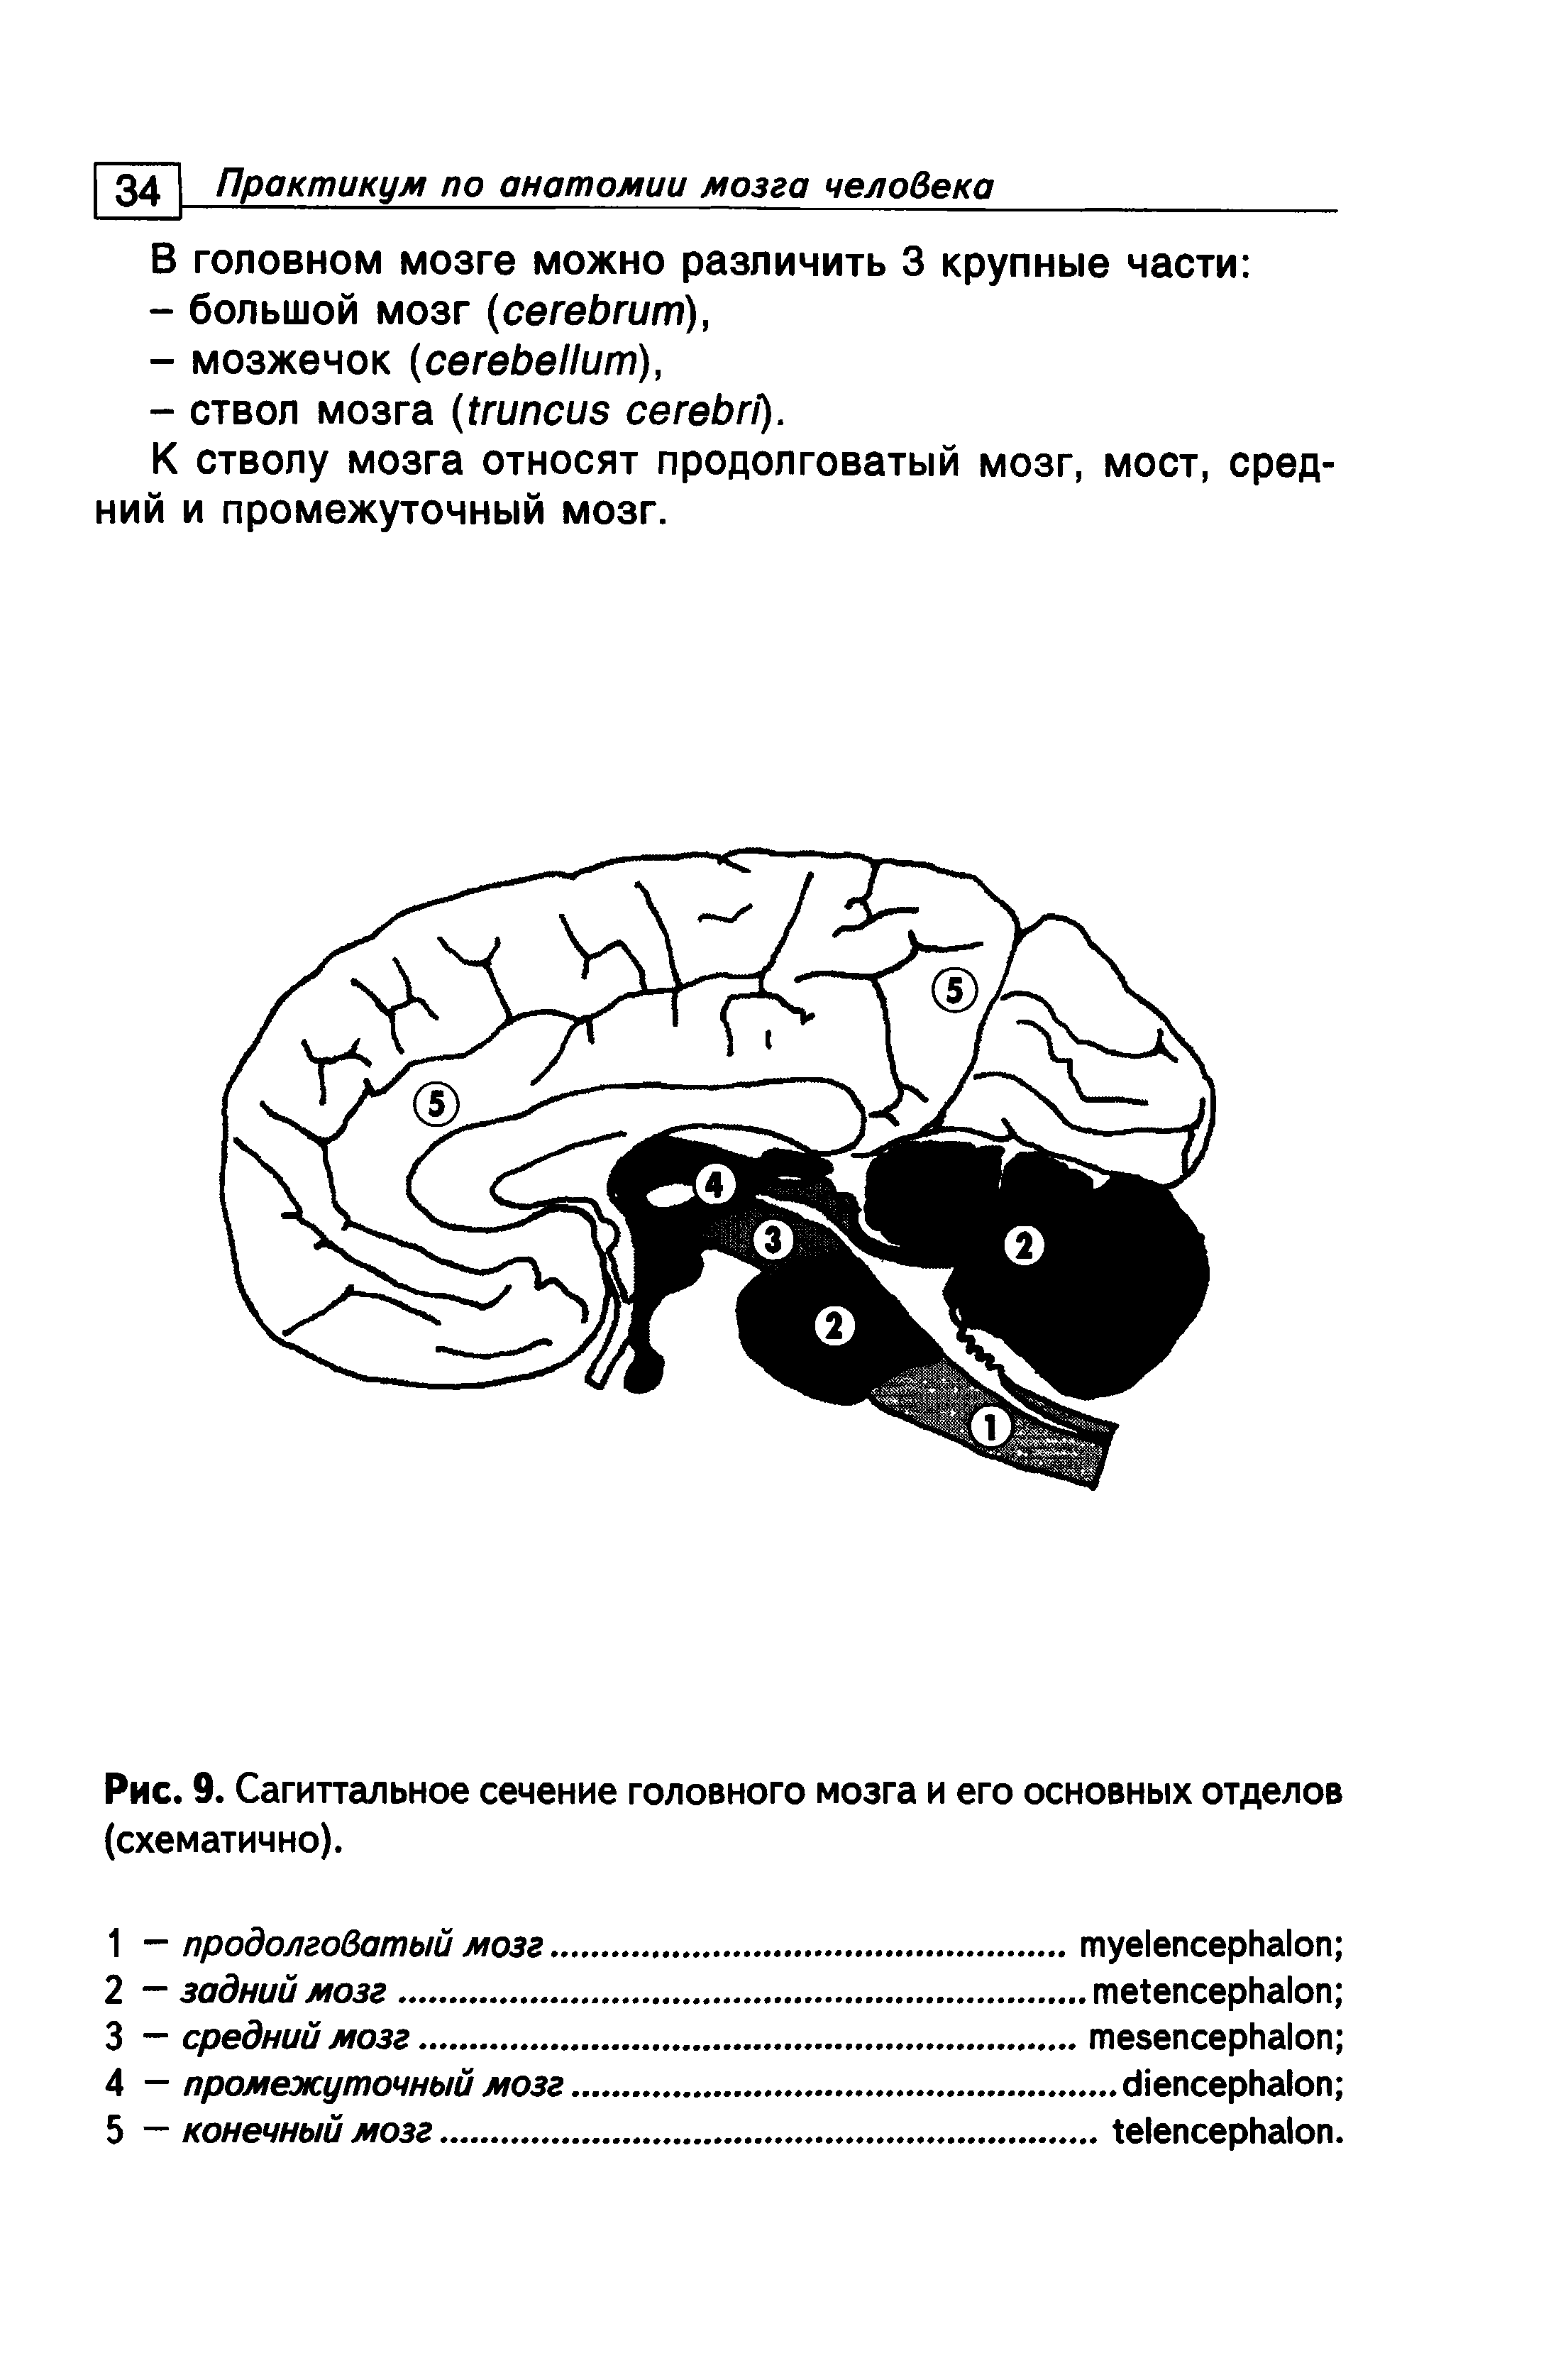 Рис. 9. Сагиттальное сечение головного мозга и его основных отделов (схематично).